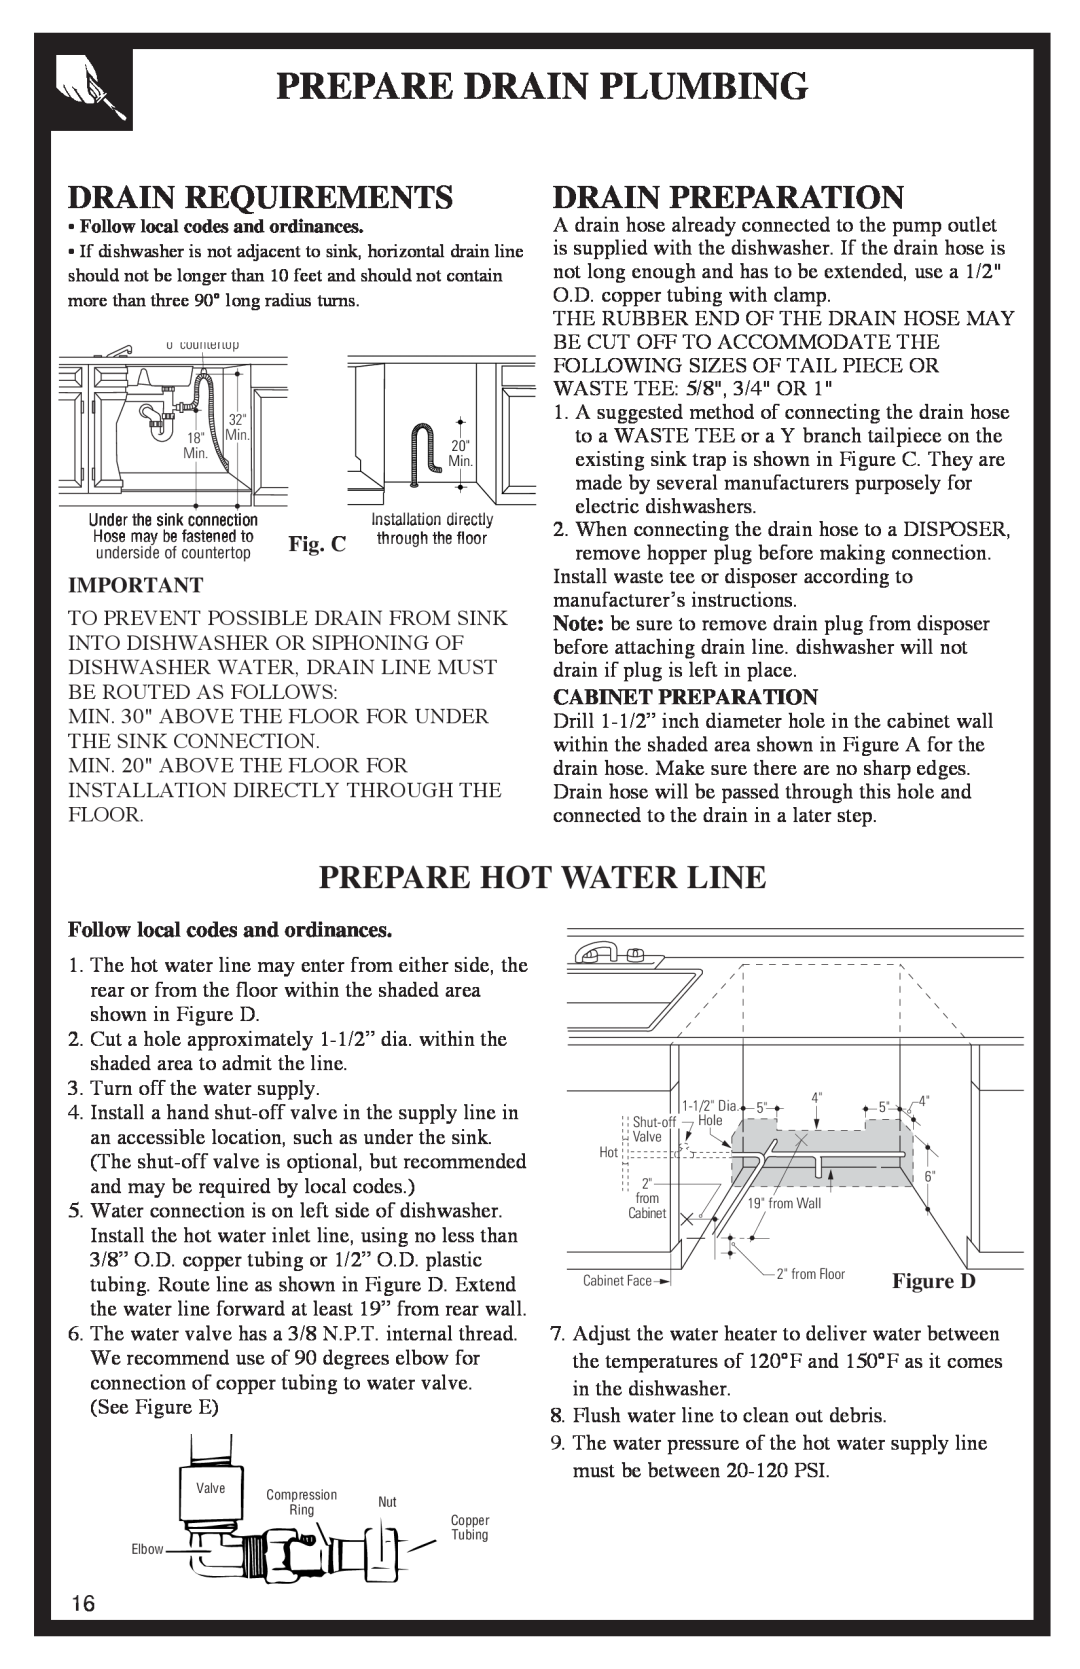 GE 500A200P047 Prepare Drain Plumbing, Drain Requirements, Drain Preparation, Prepare Hot Water Line, Fig. C 